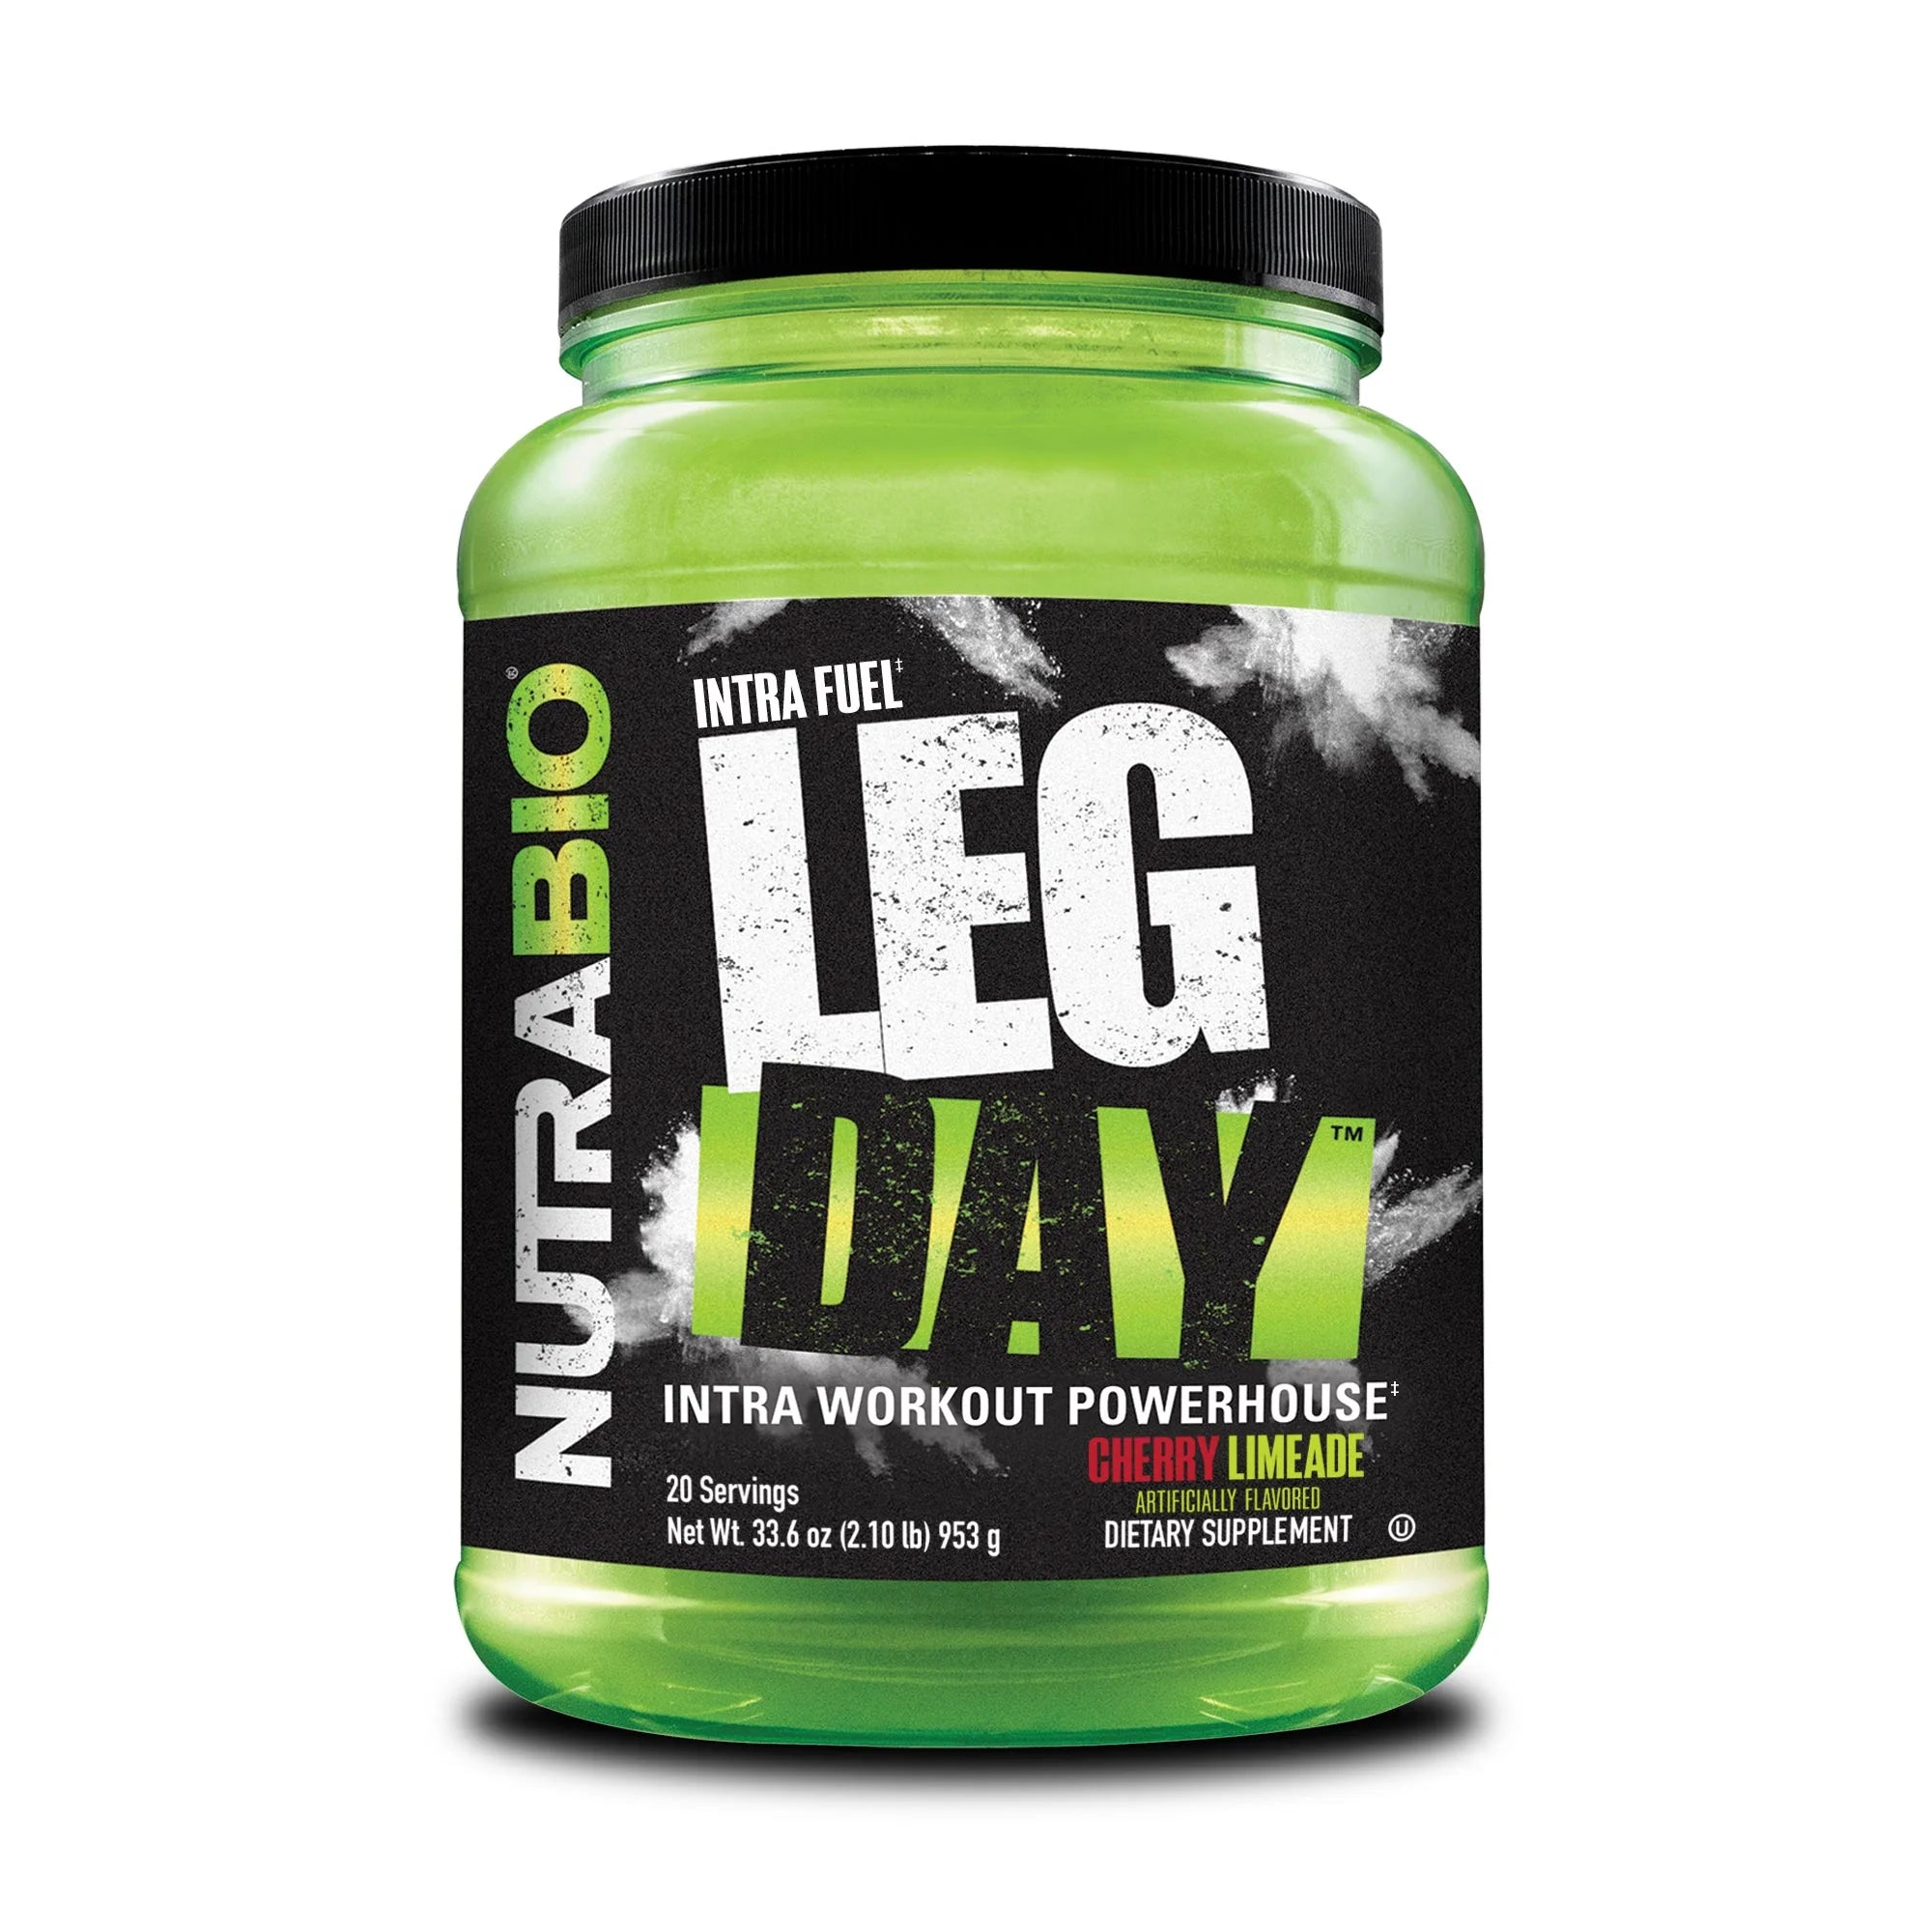 Nutra Bio | Intra Fuel Leg Day